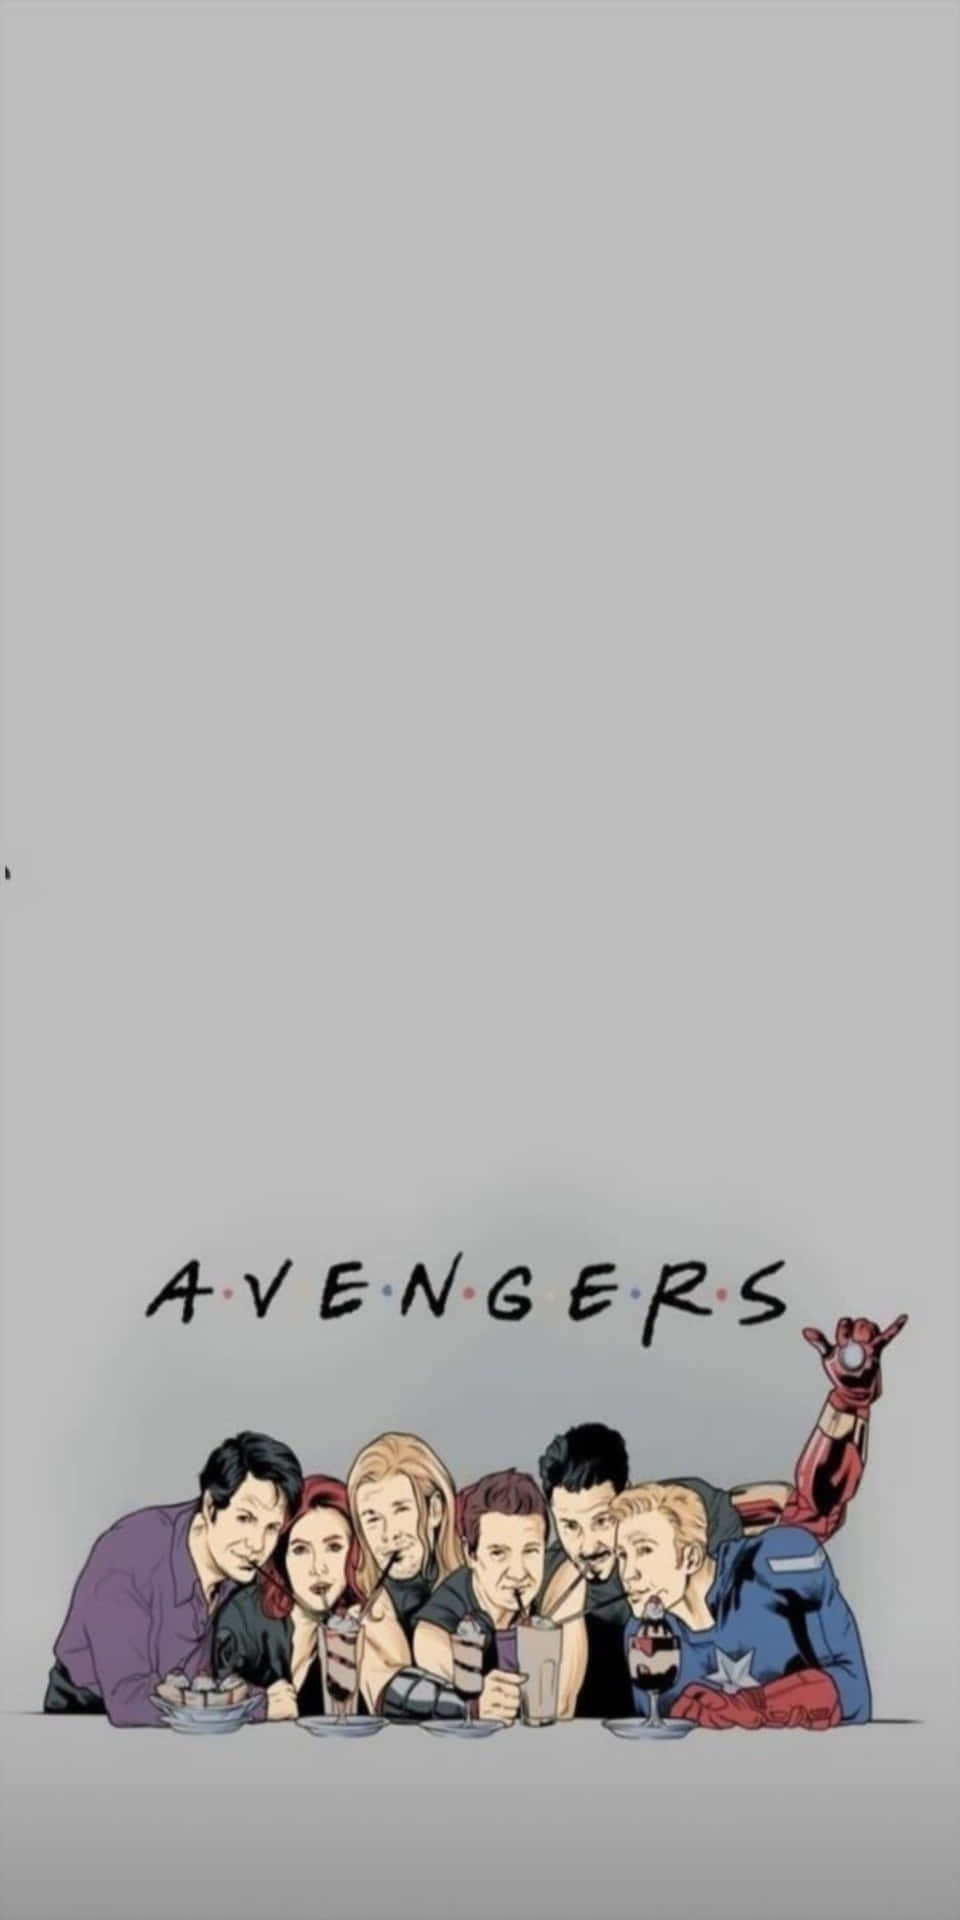 Gray Pixel 3 Marvel's Avengers Background